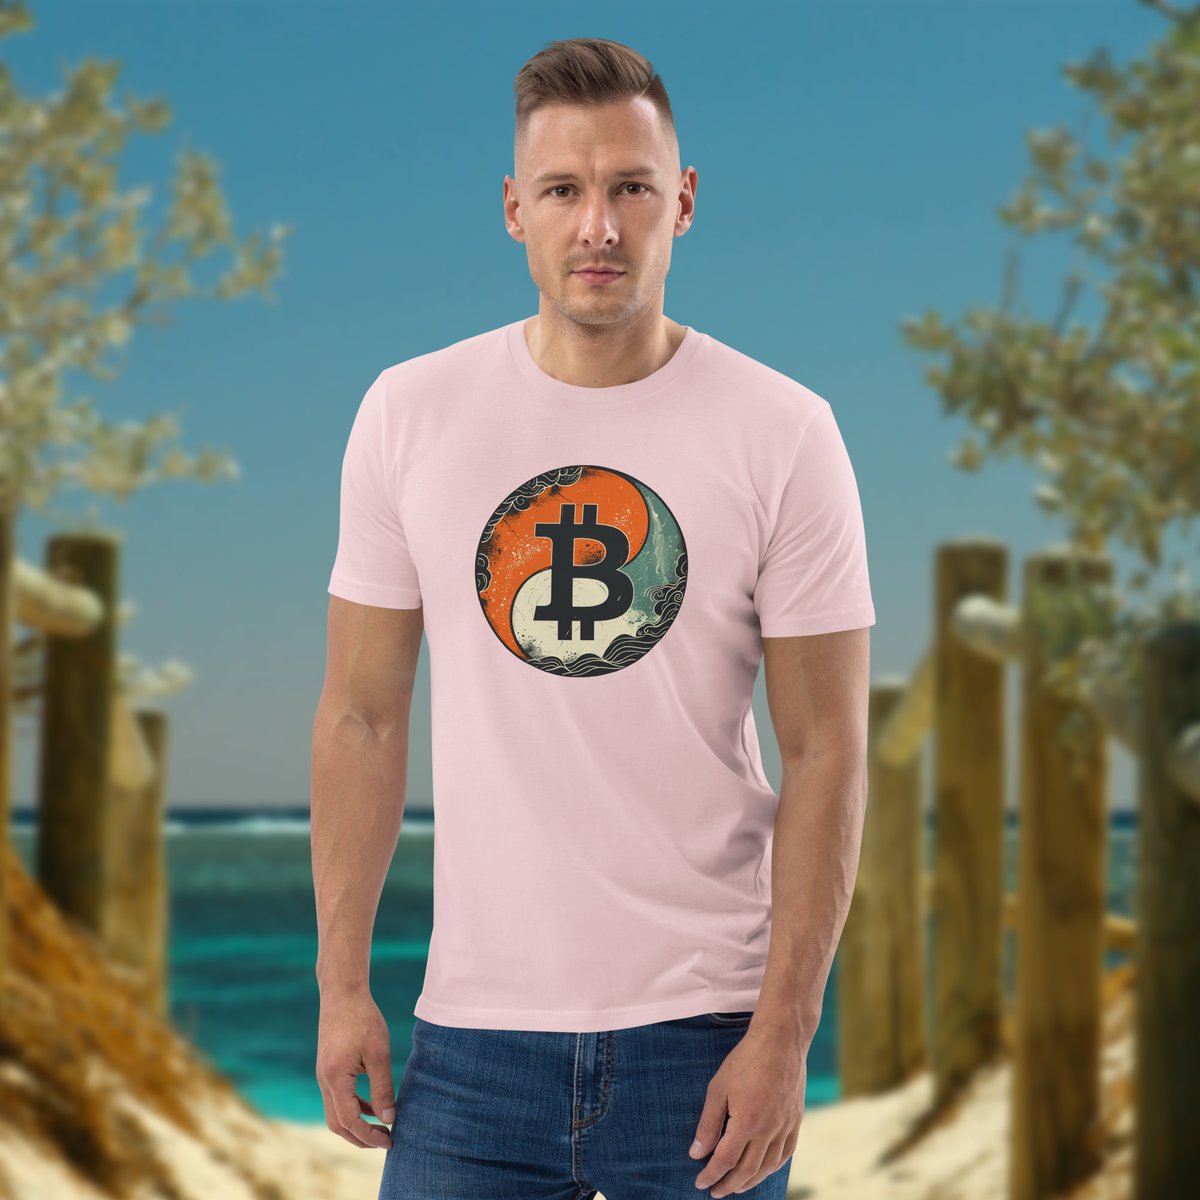 Balance your crypto portfolio and your wardrobe with our 'Yin Yang Bitcoin' T-Shirts!  ⚖️👕🧘‍♂️₿

bitcoinagora.shop/collections/yi…

#bitcoinagora
#cryptotrading
#apparel
#yinyang
#fashionclothing
#bitcoin
#satoshi
#cryptoapparel
#cryptoclothing
#cryptofashion
#menshirts
#tshirts